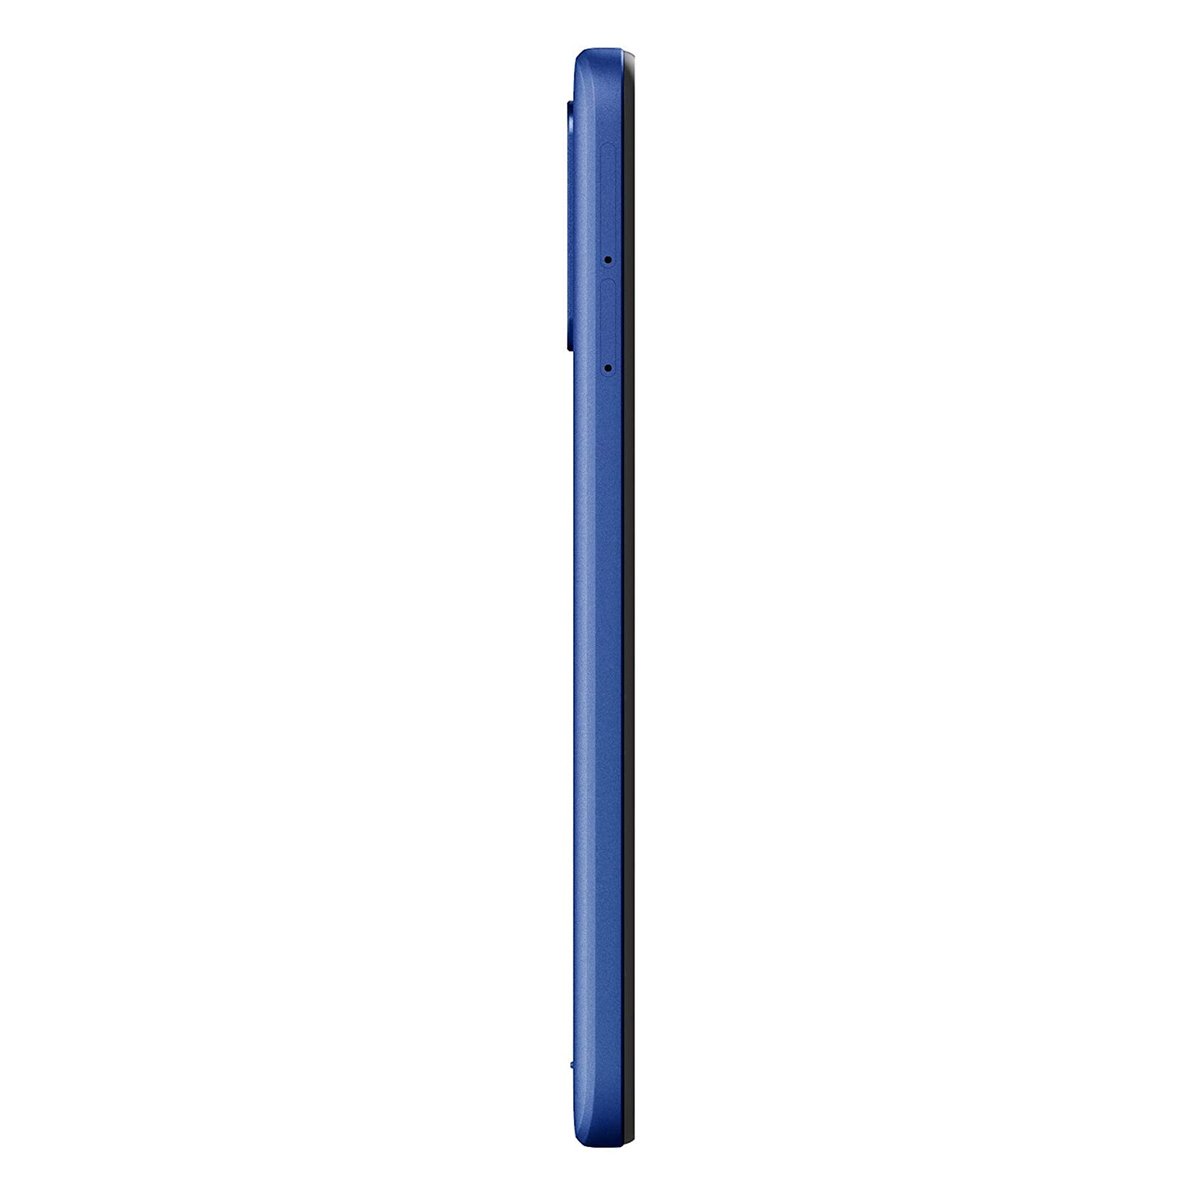 Lenovo Smart Phone A8 64GB, Blue